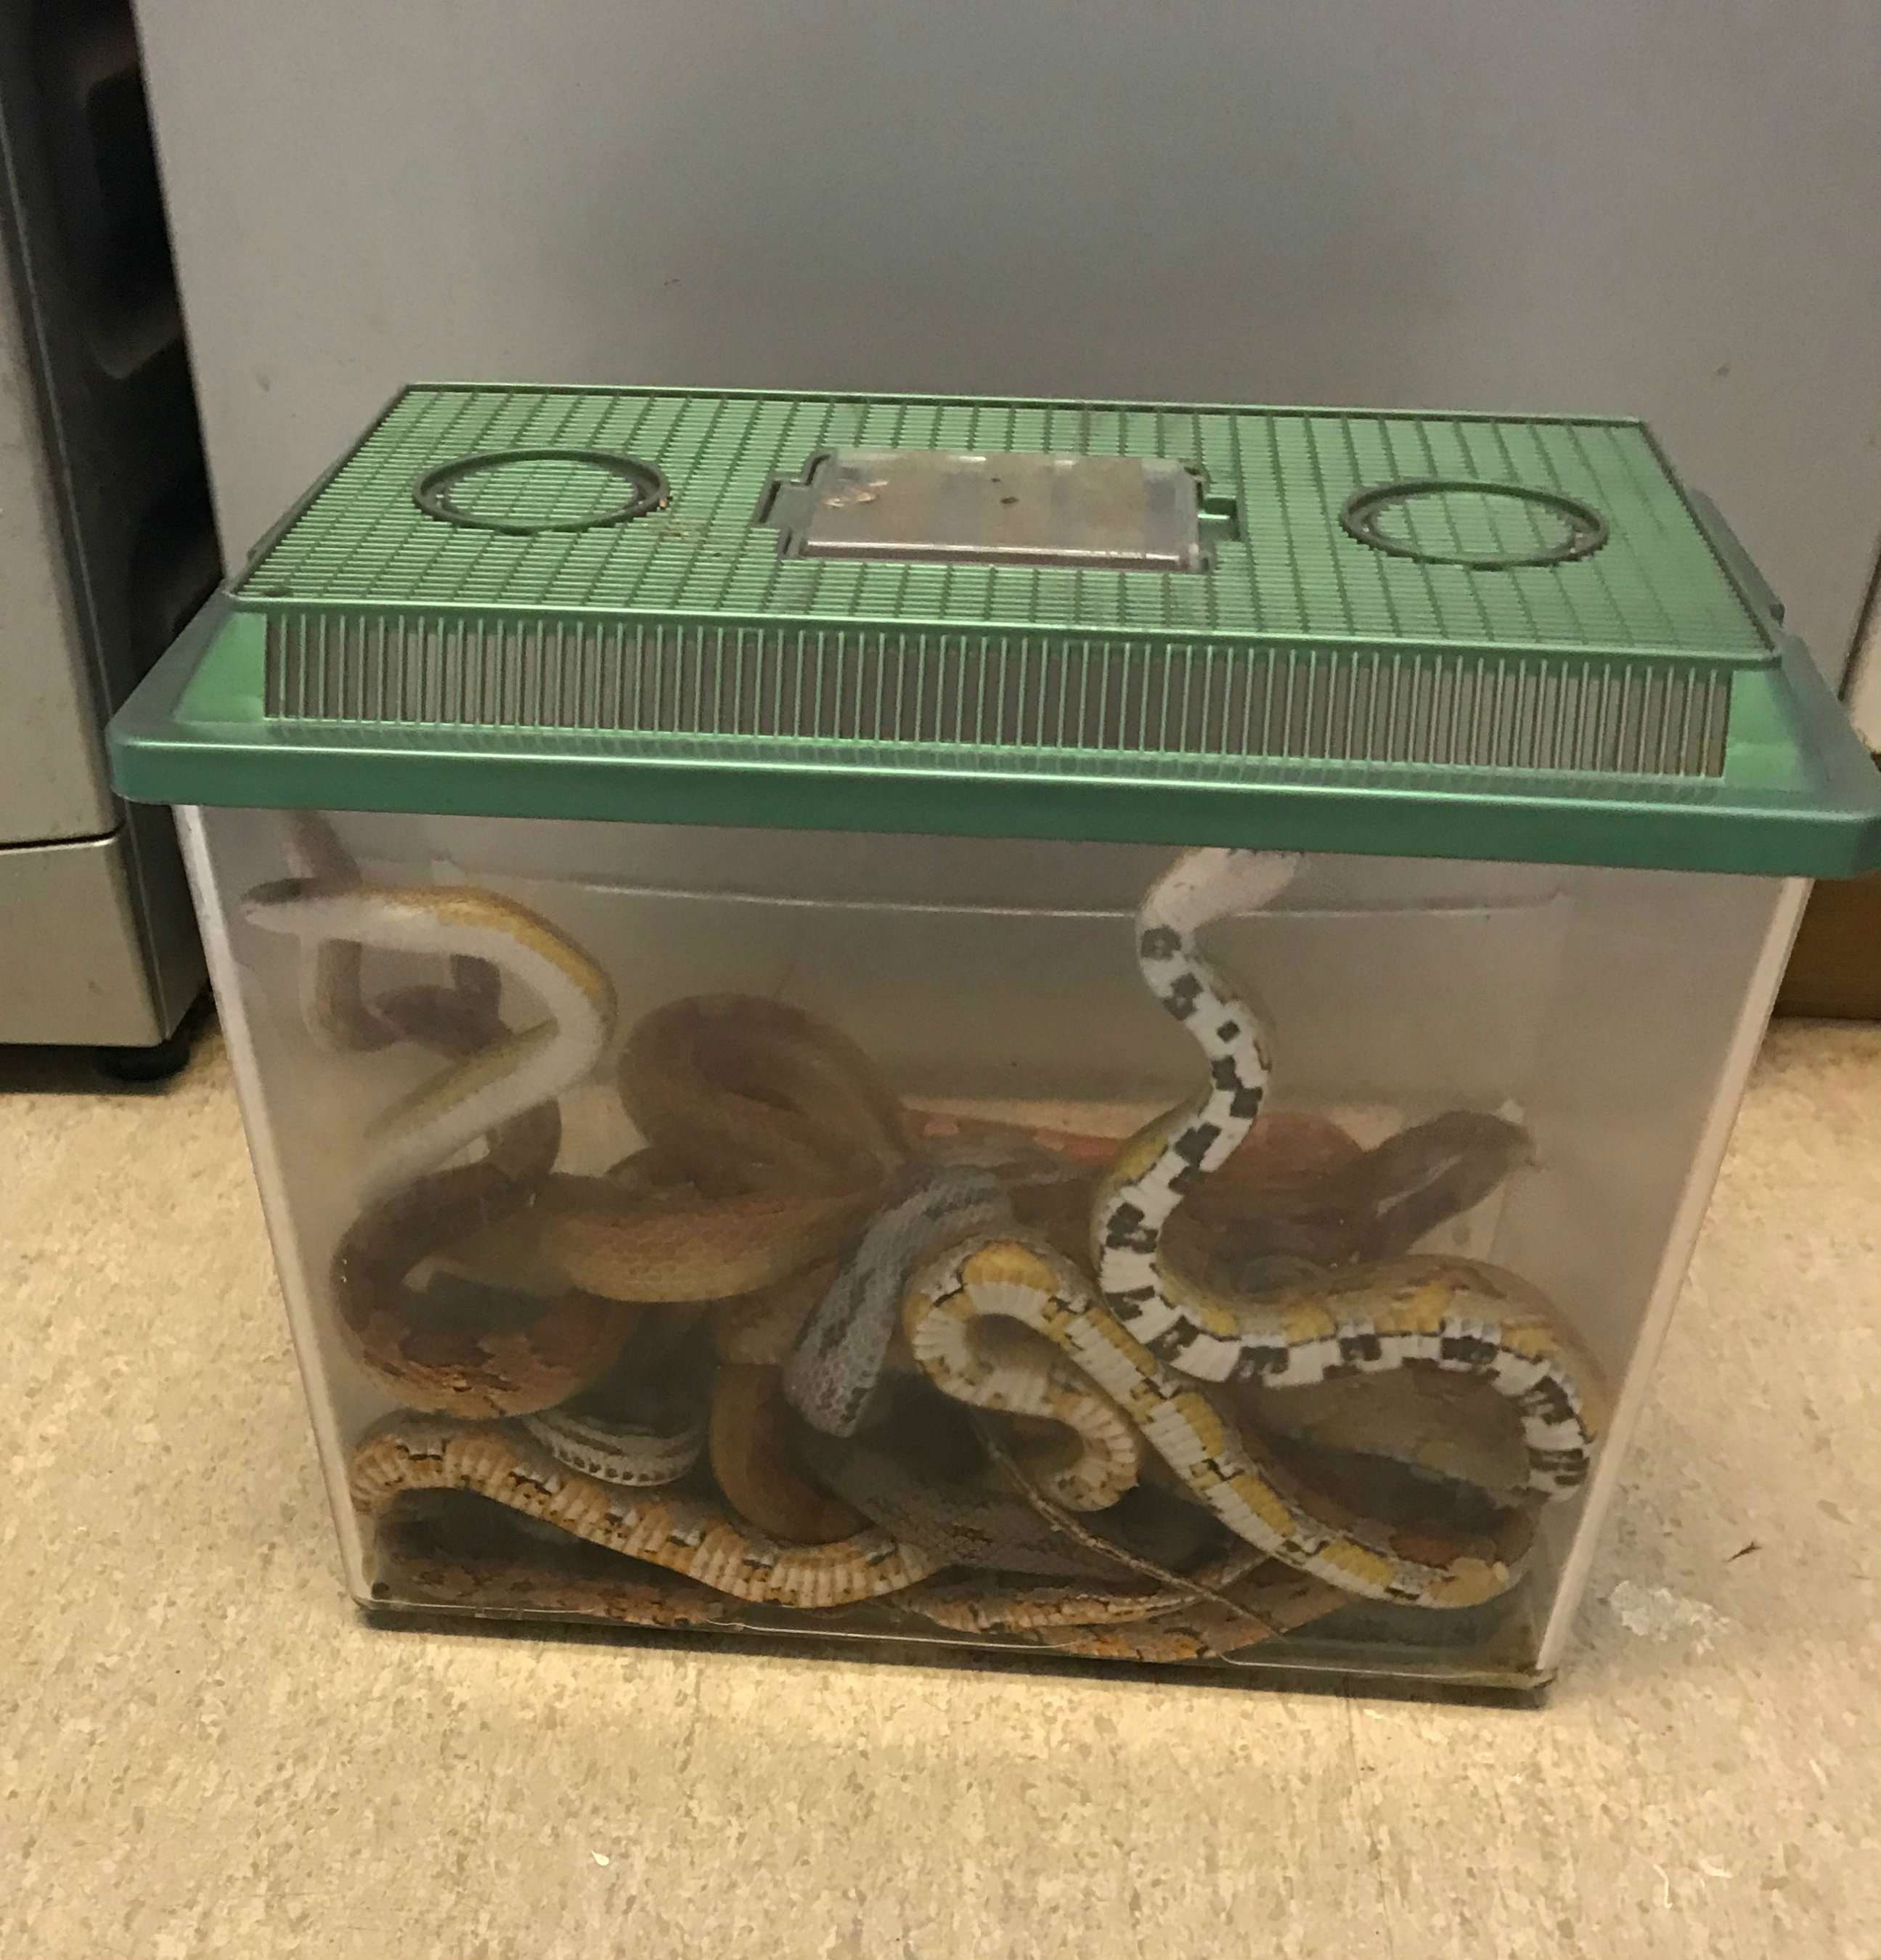 A box of snakes left outside a vet's